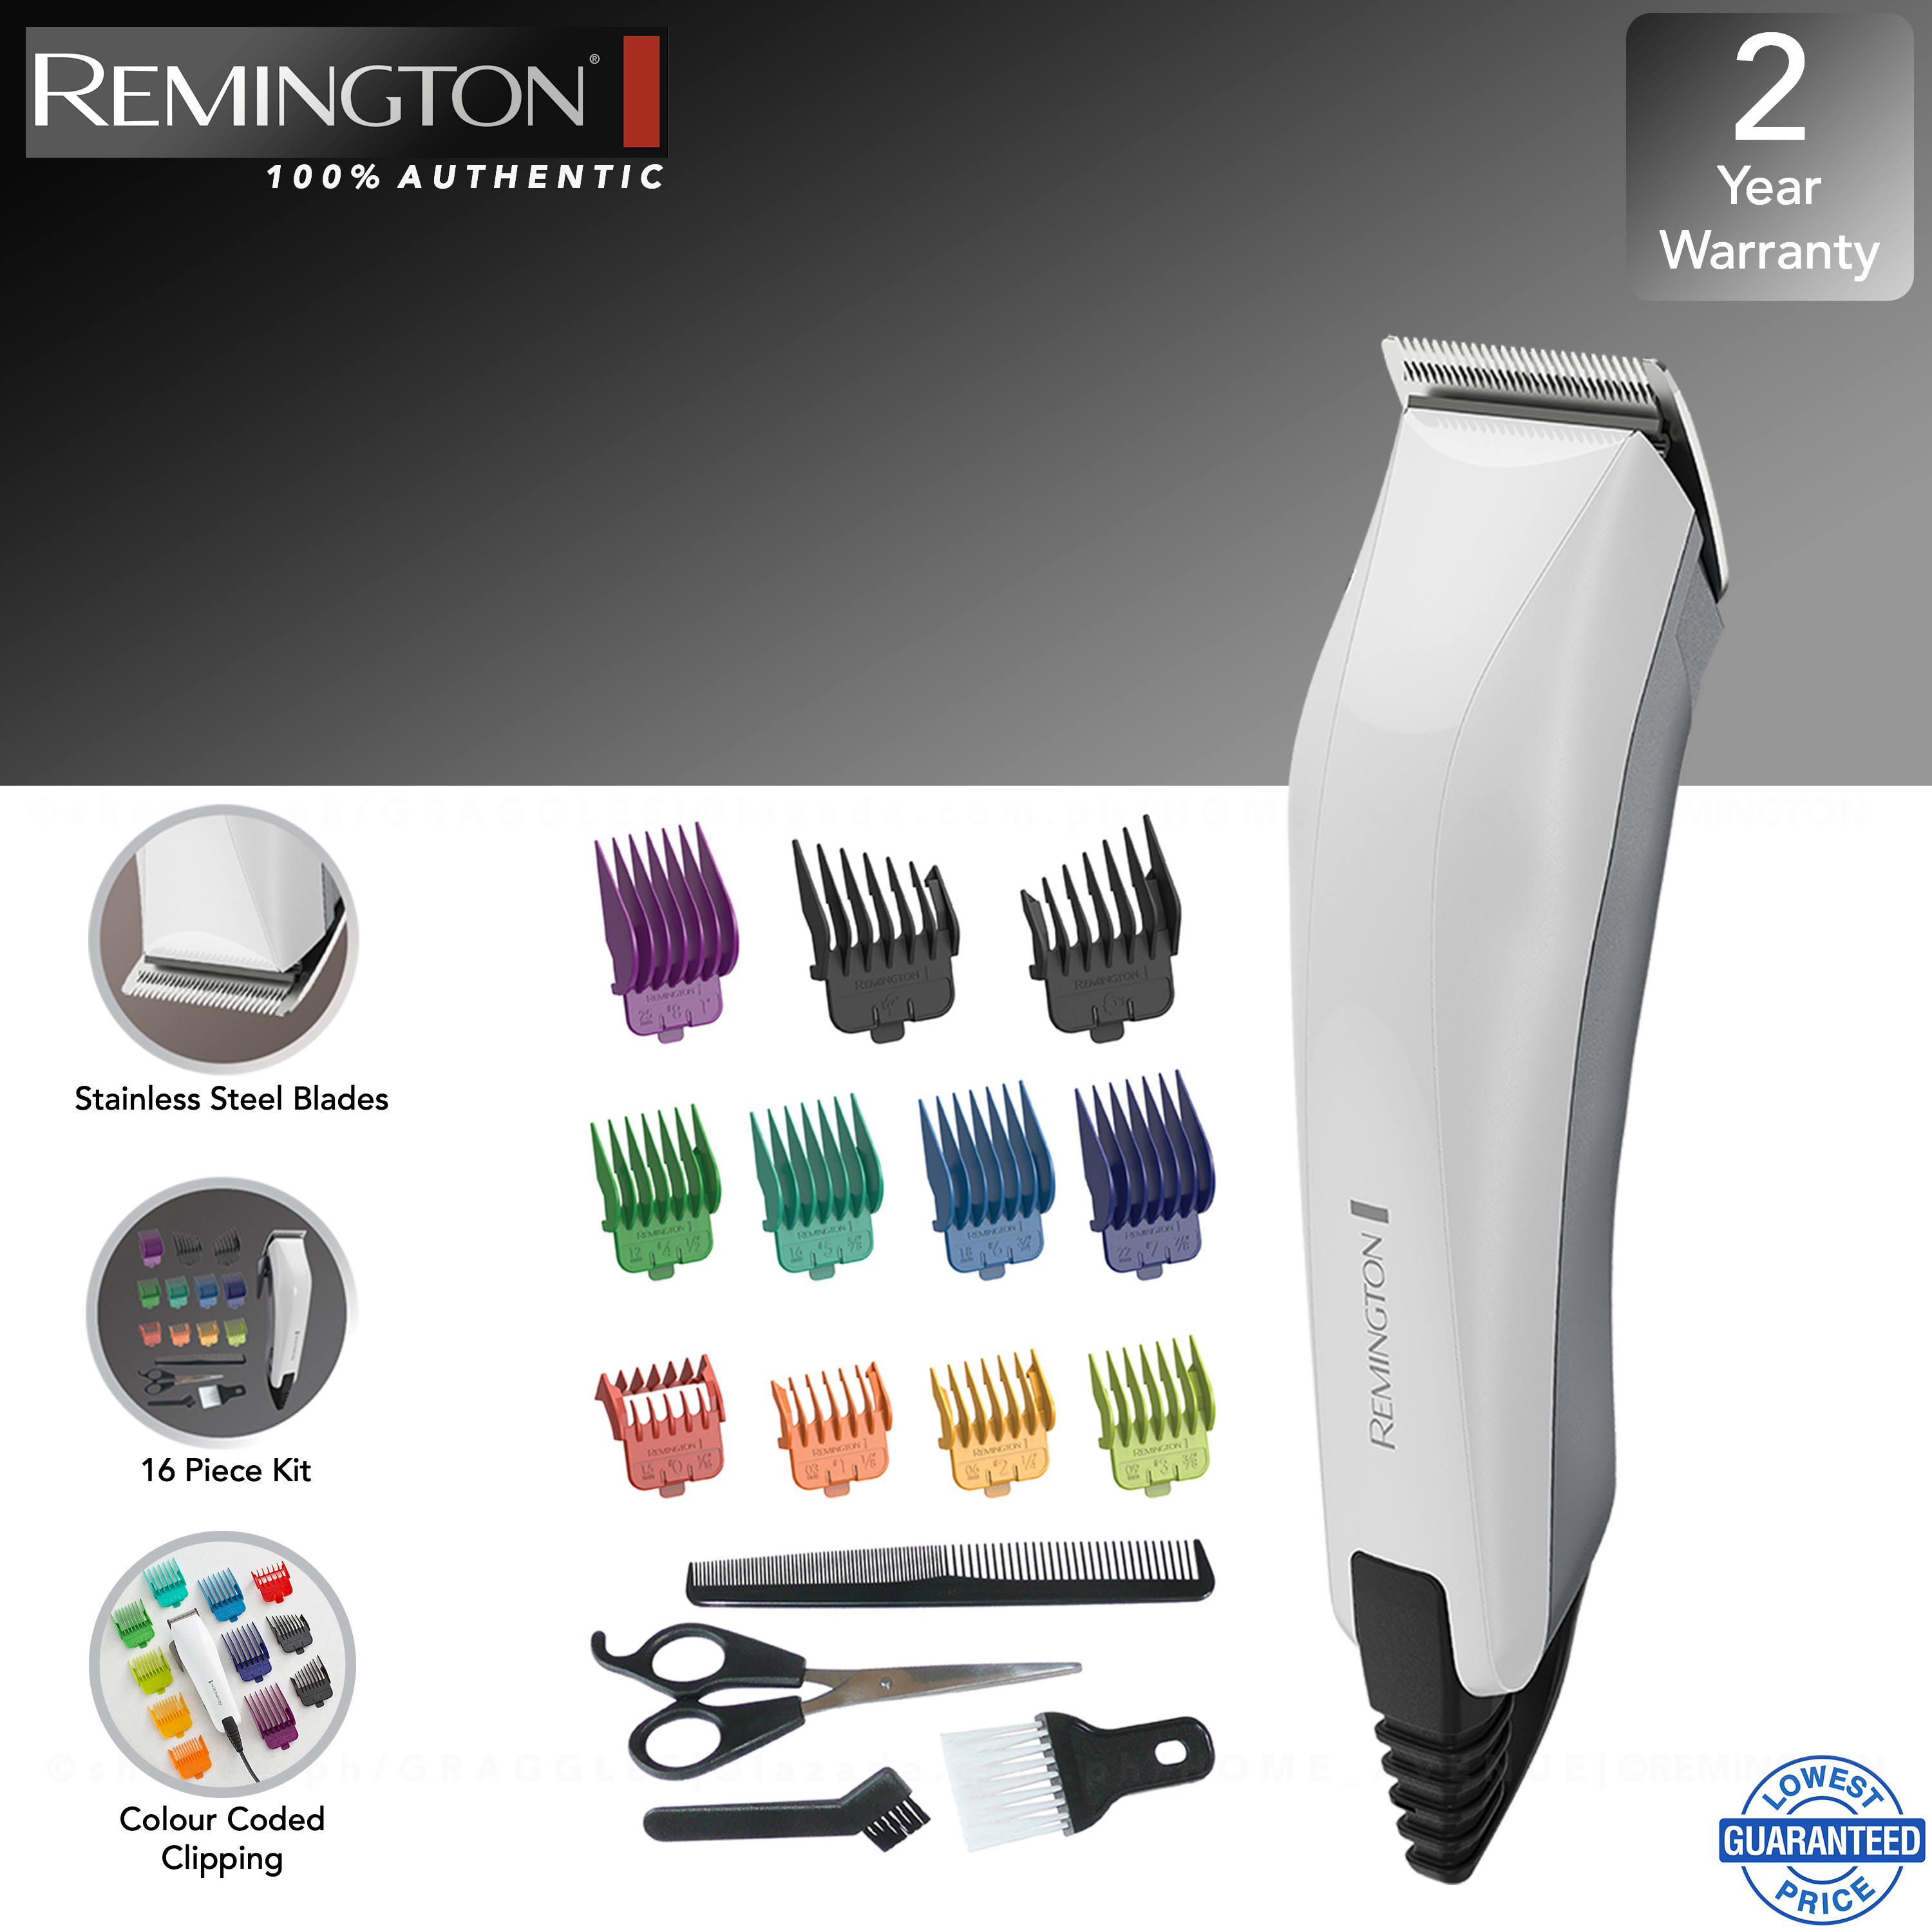 remington colour cut 16 piece kit